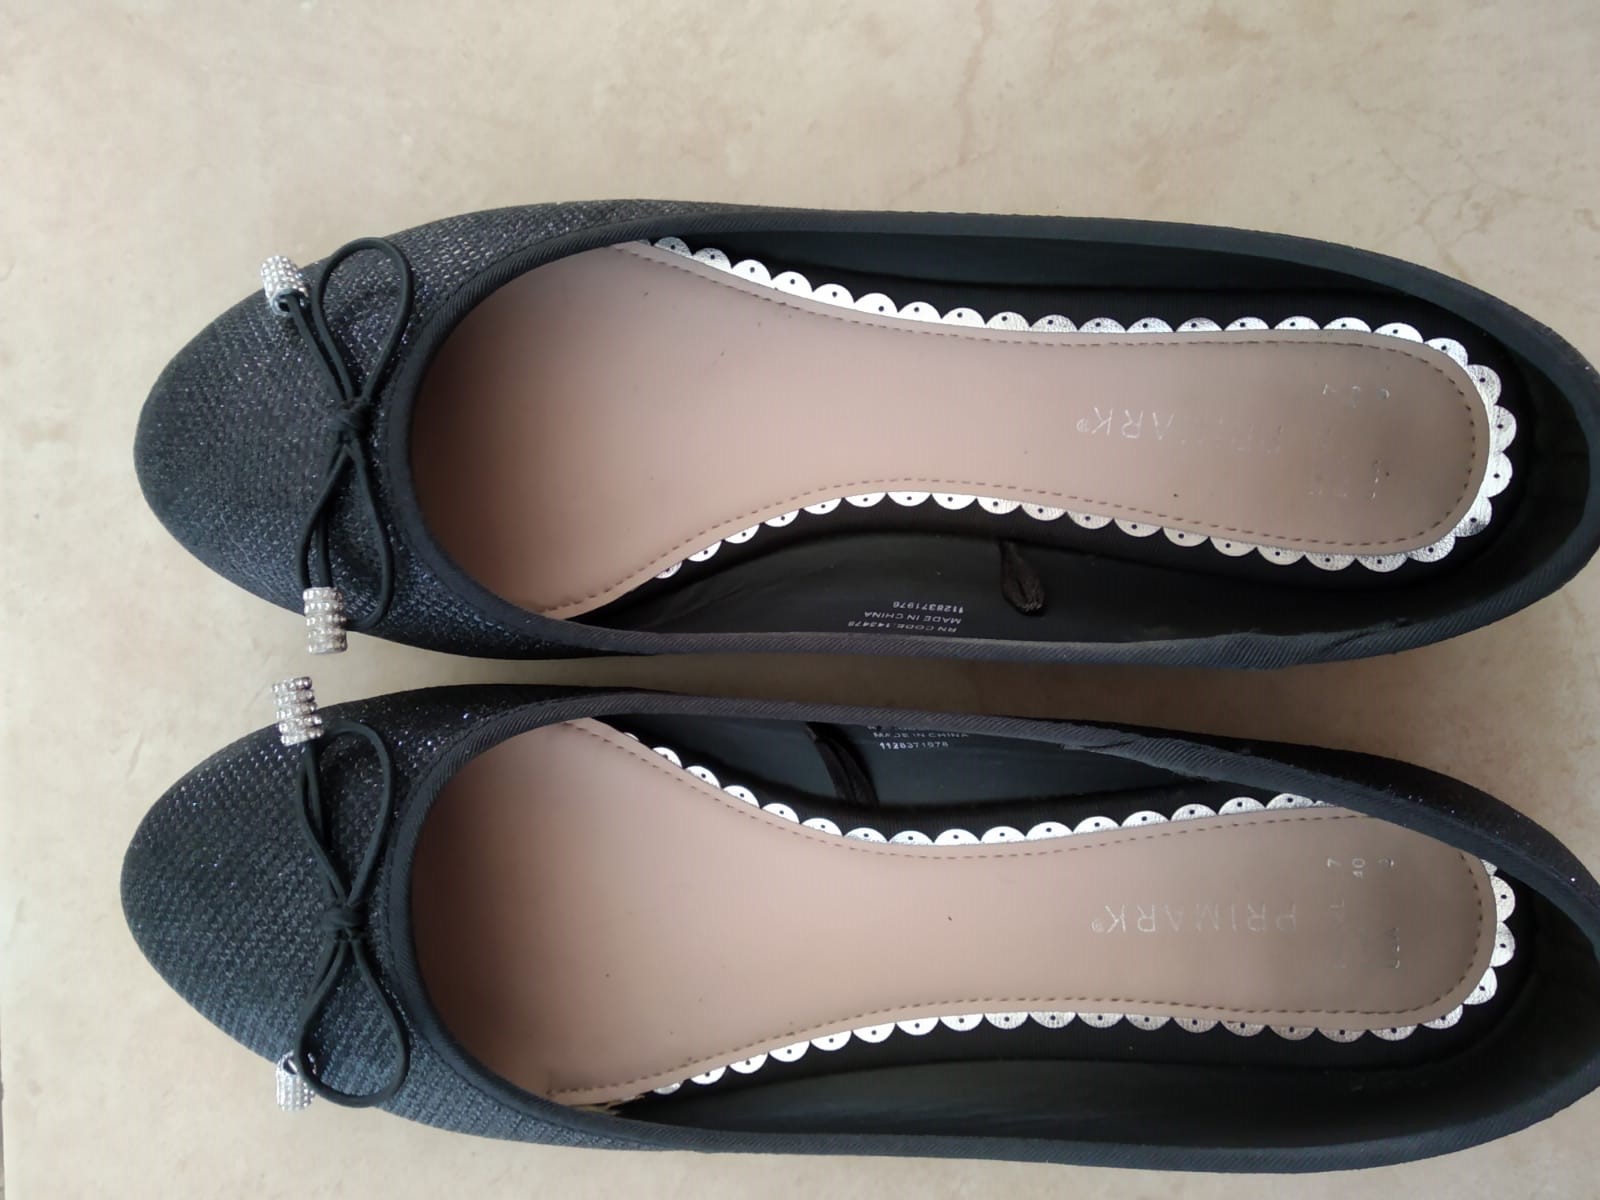 תמונה 5 ,נעלי נשים שונות למכירה בפתח תקווה ביגוד ואביזרים  נעליים